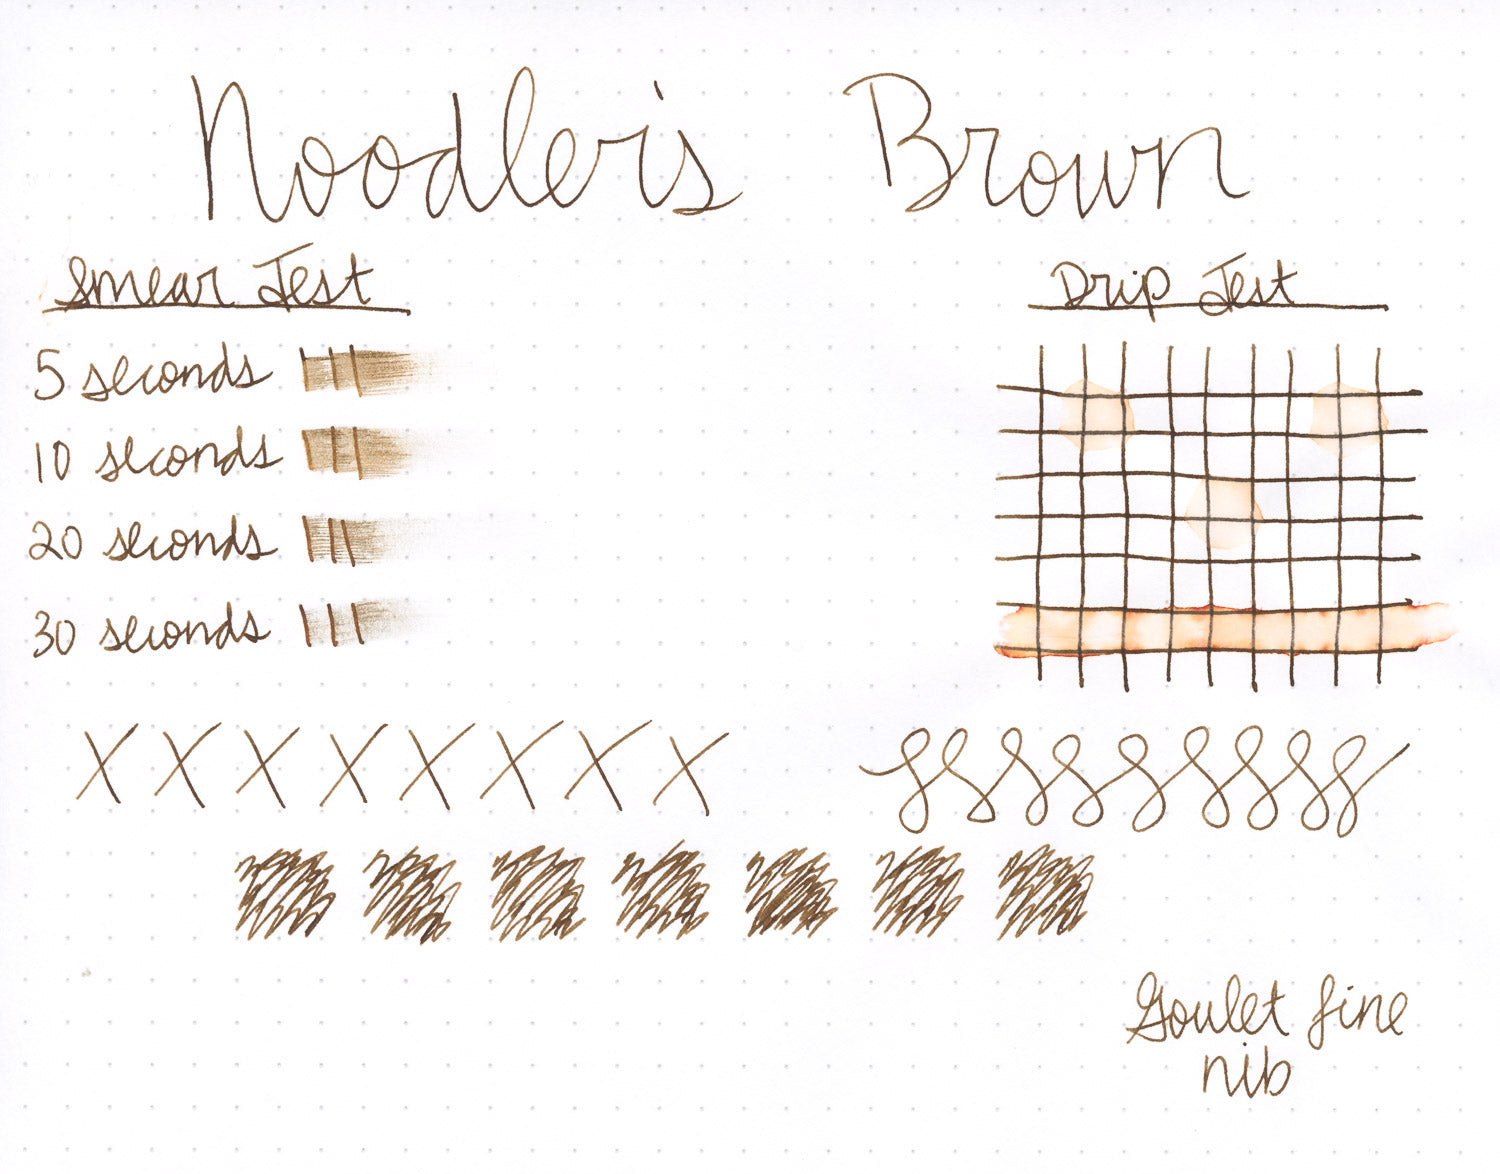 Noodler's Brown